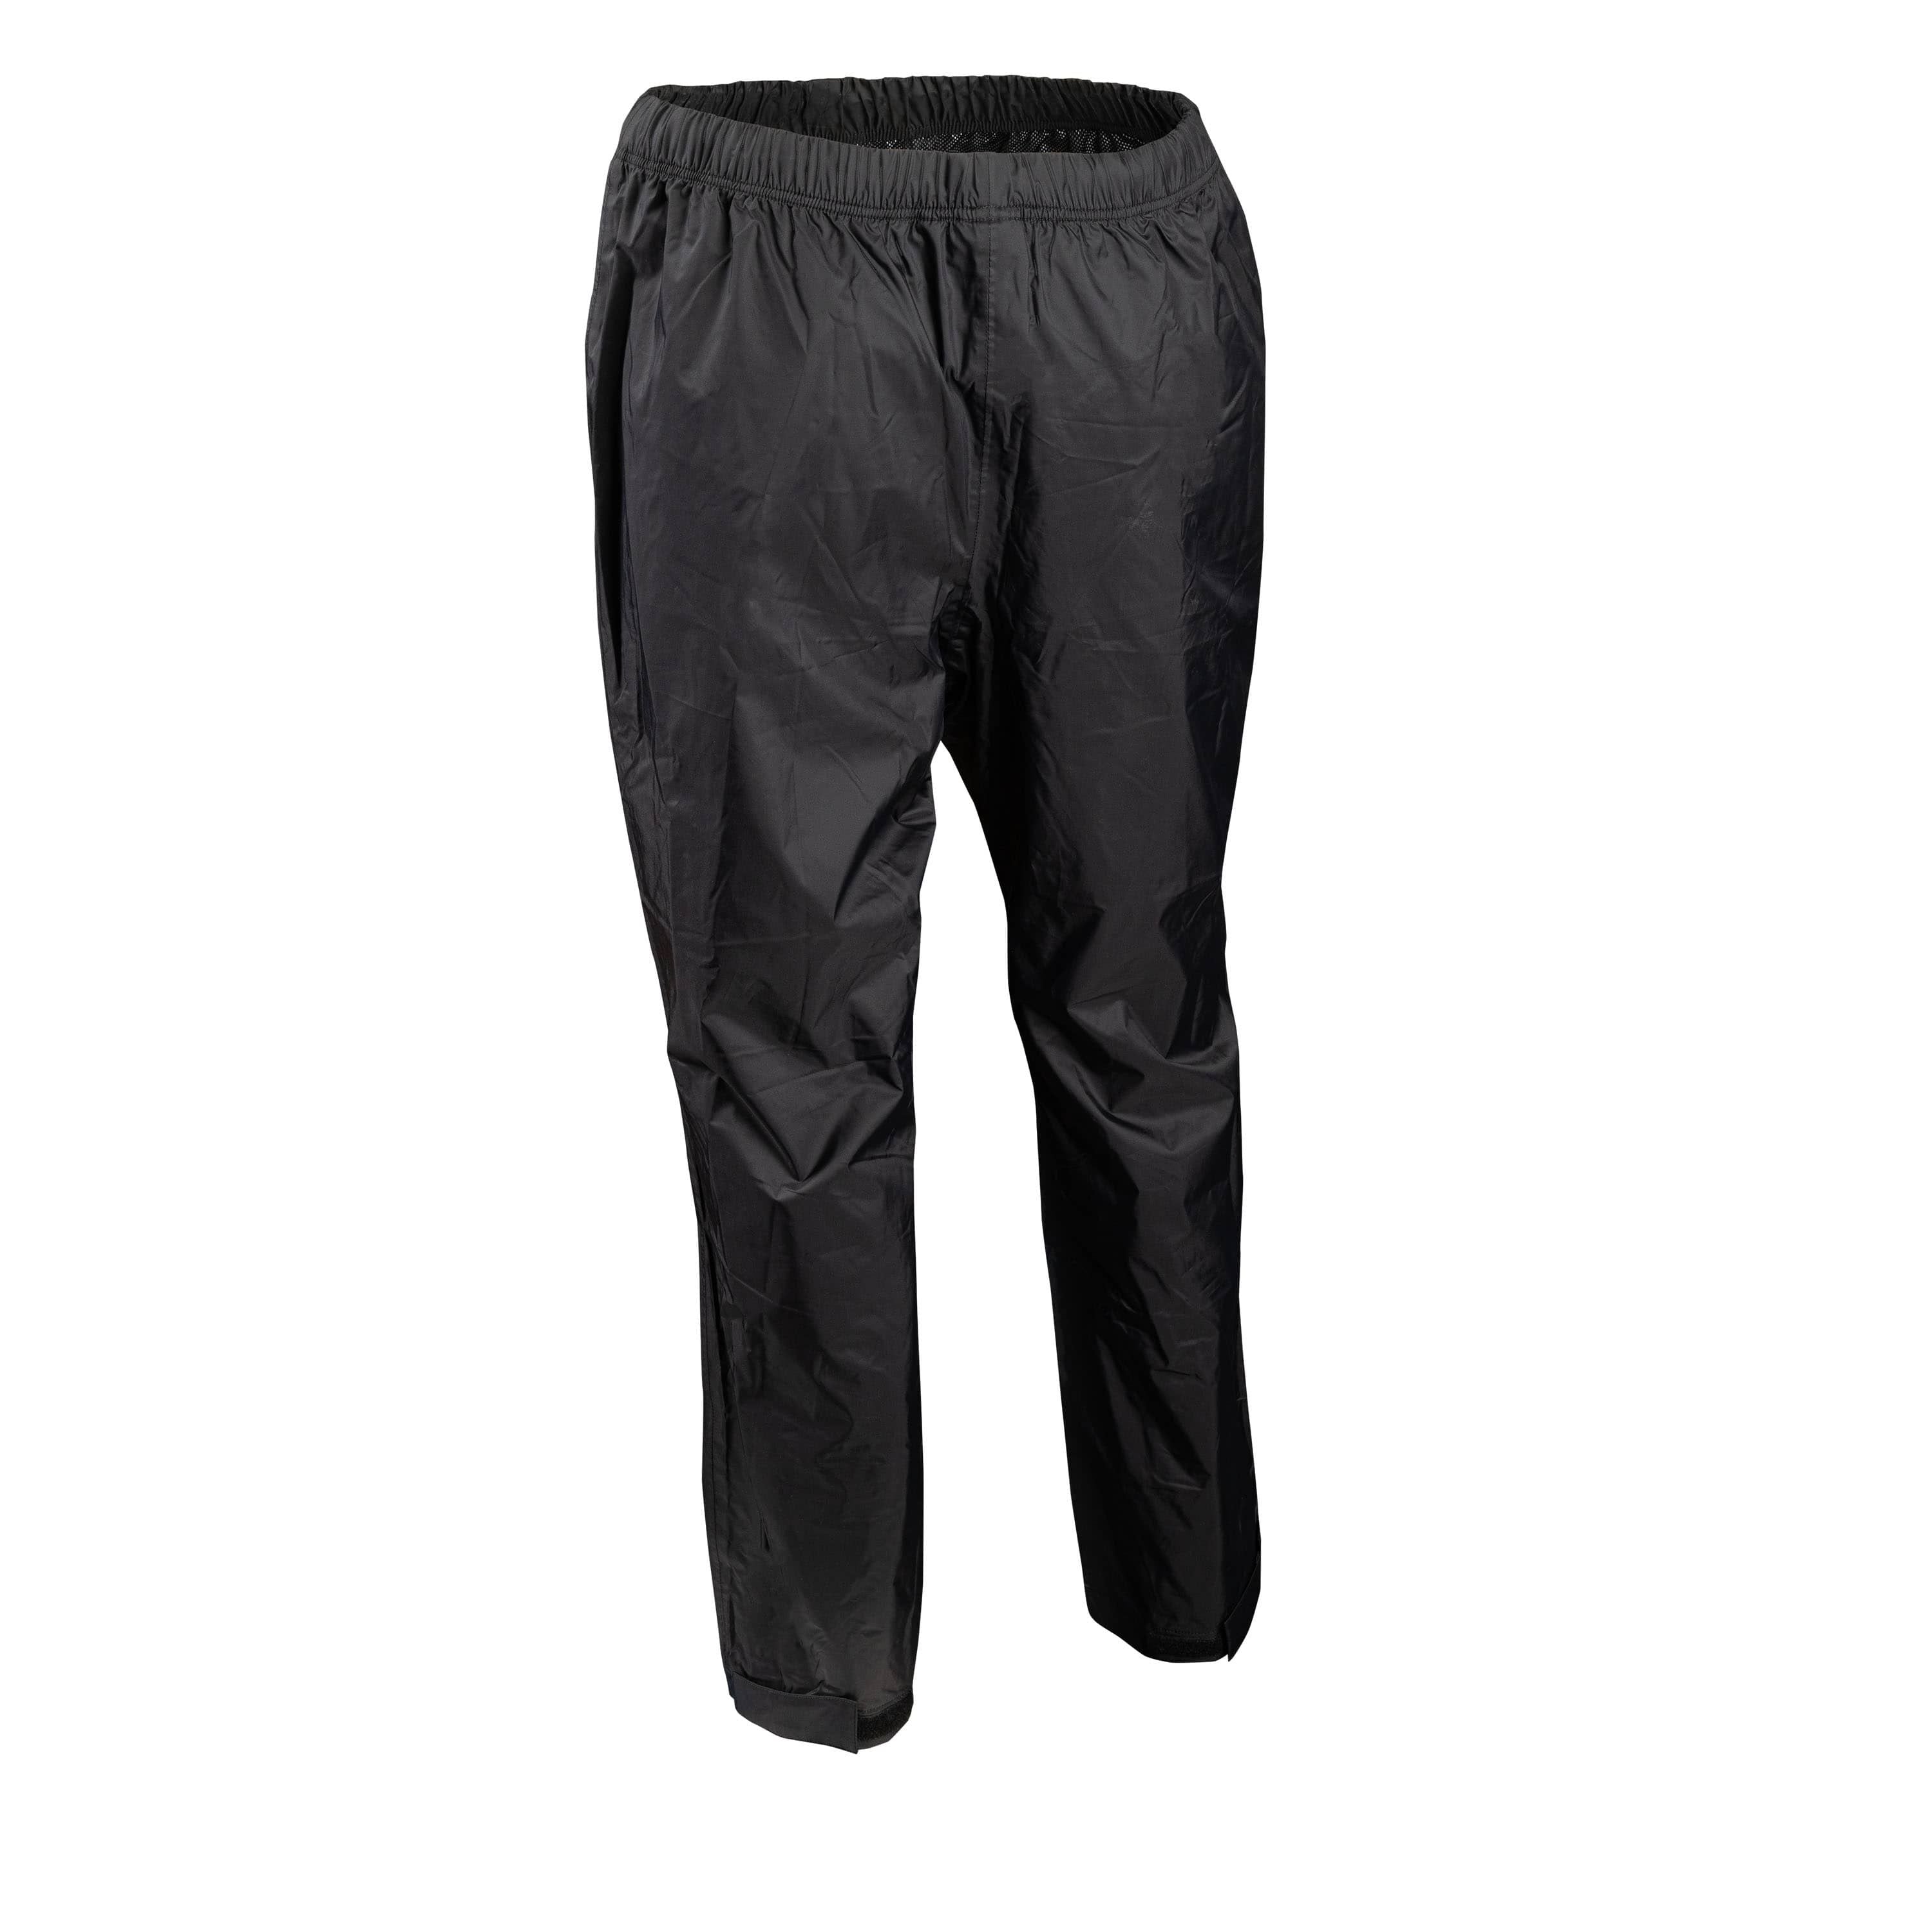 Pantalon imperméable "Joucou" - Homme||"Joucou" Waterproof pants - Men’s